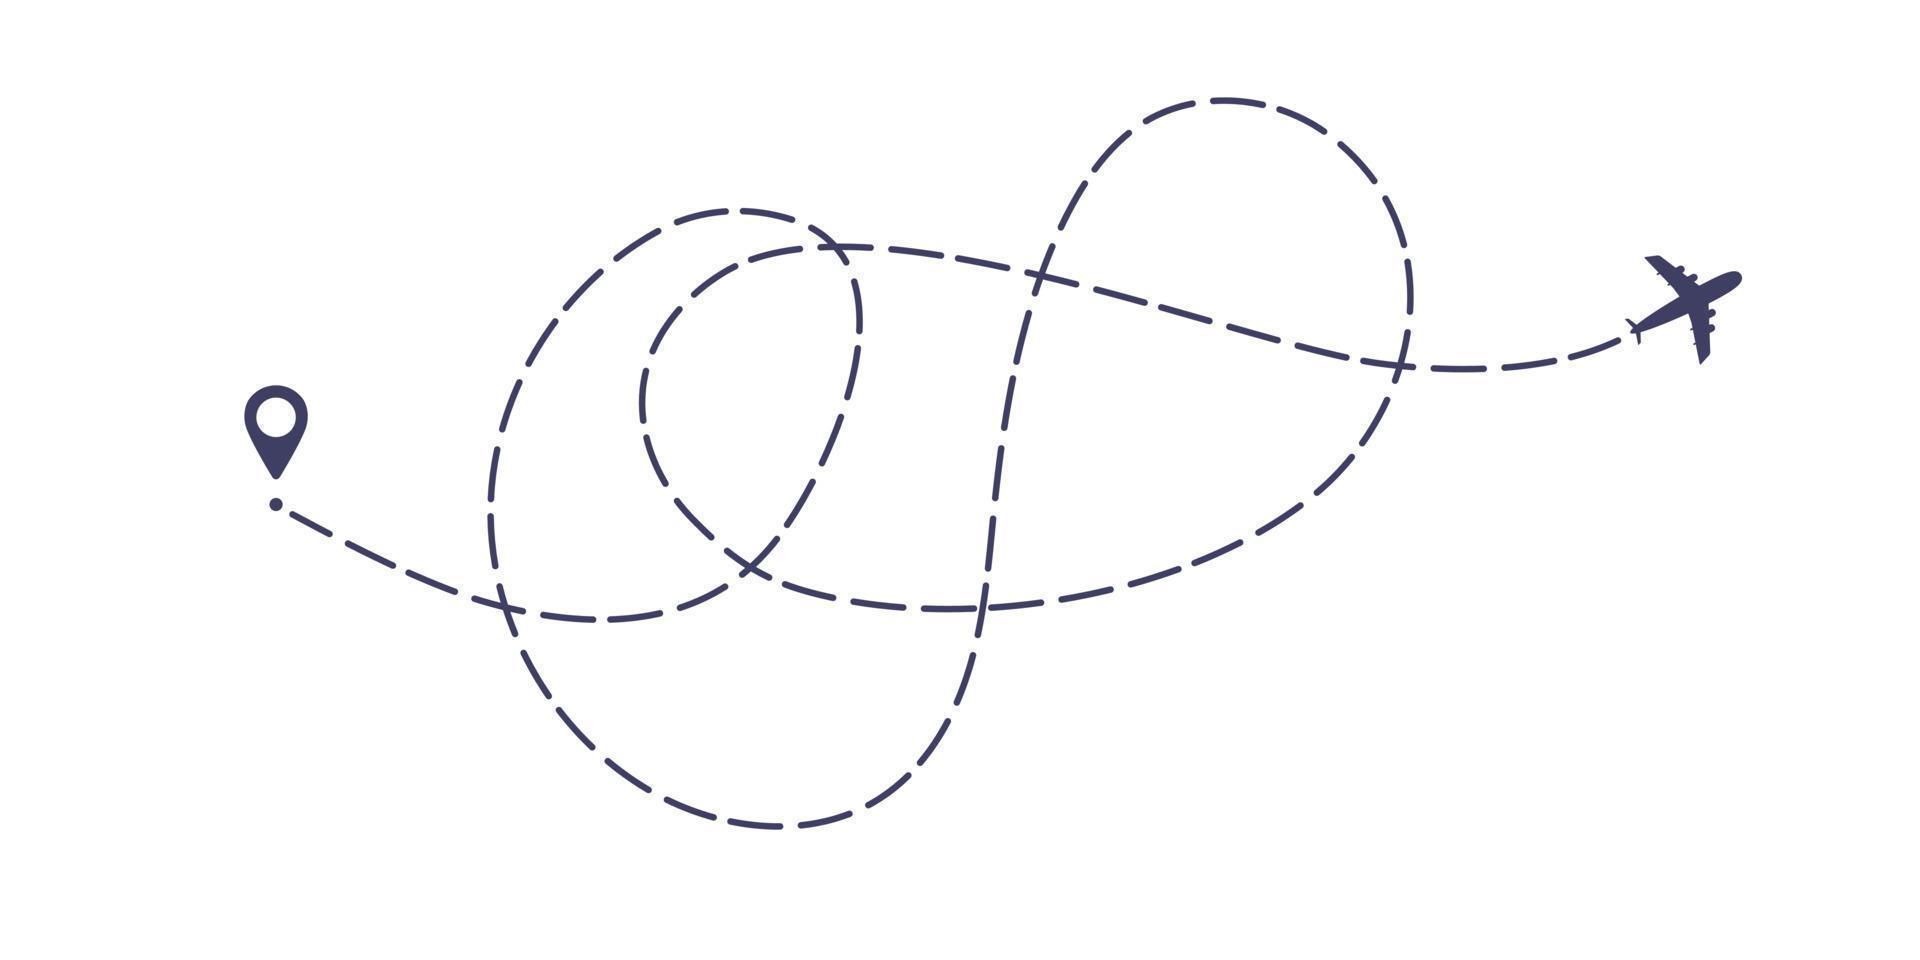 illustrazione vettoriale di disegno in stile piatto del percorso della linea tratteggiata dell'aeroplano isolata su sfondo bianco.